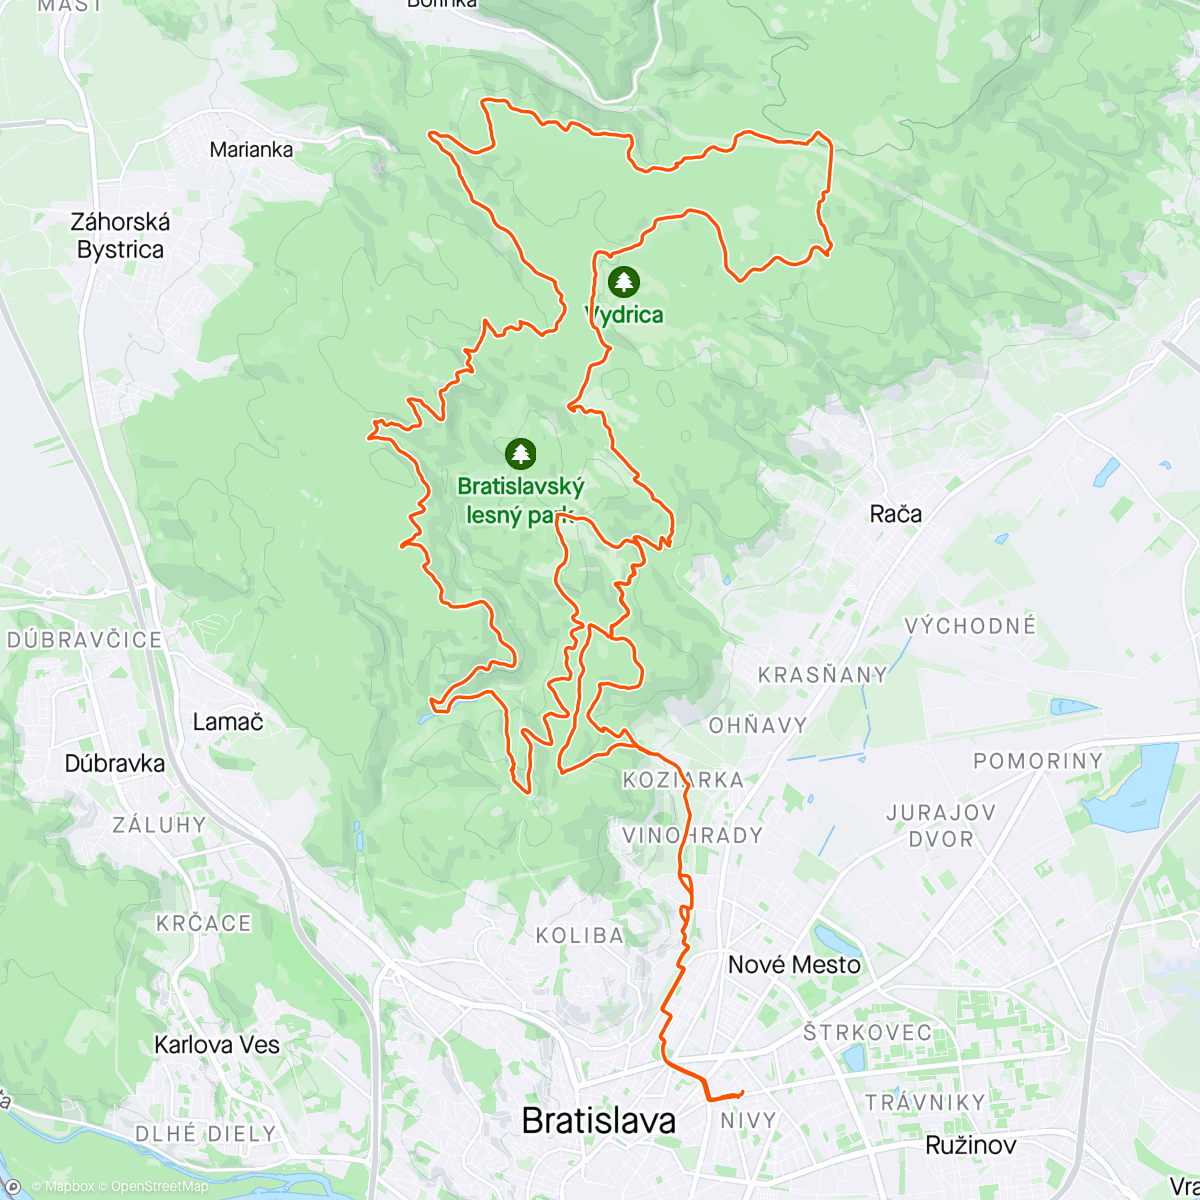 「Nedeľná trailovačka」活動的地圖